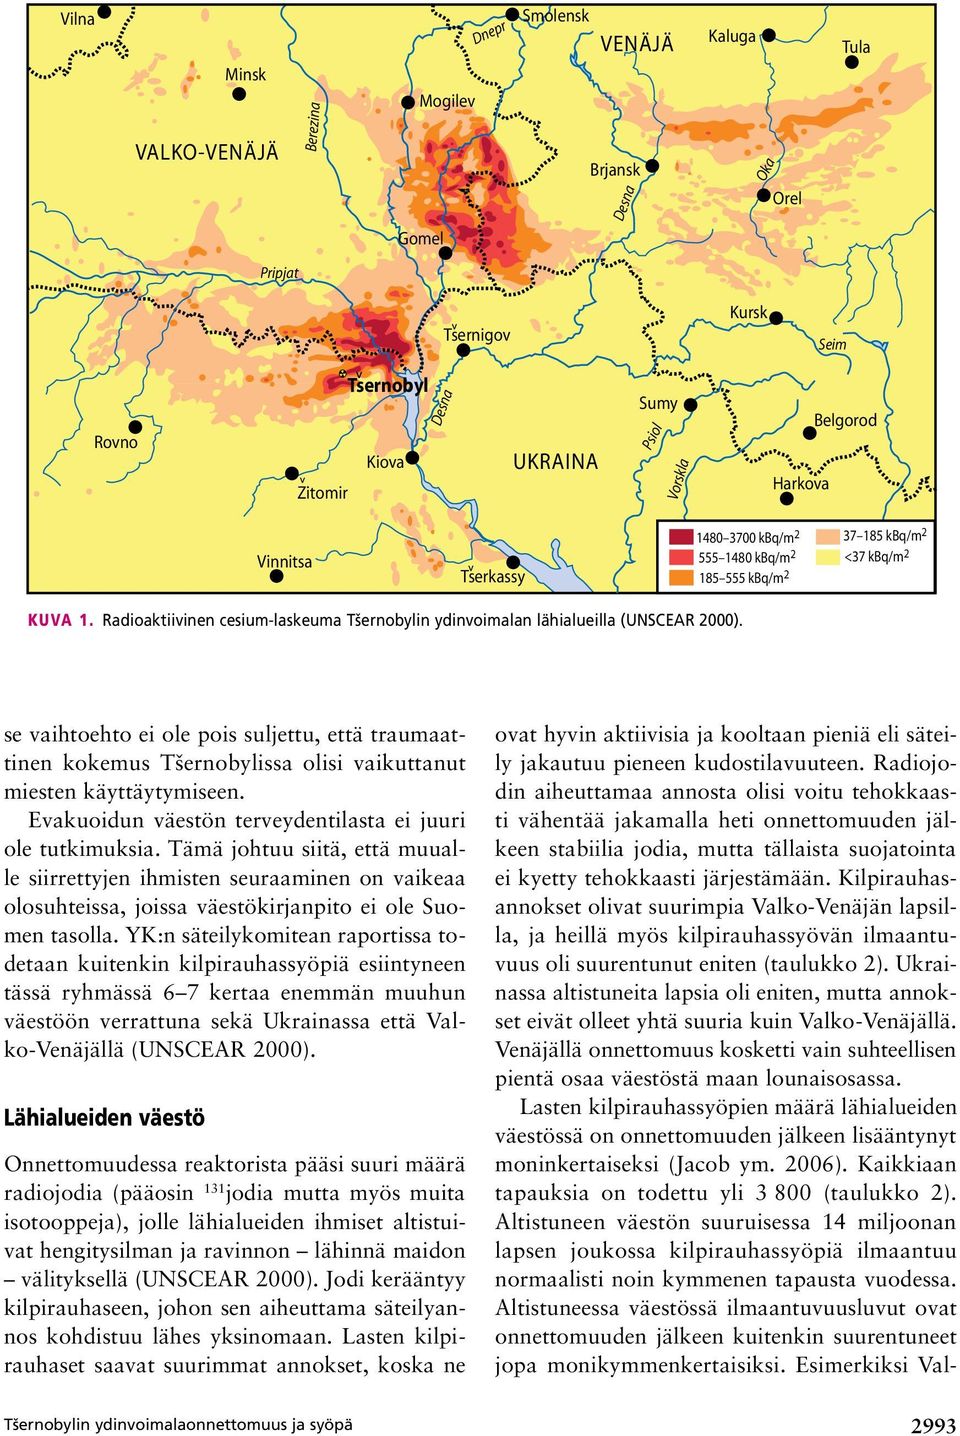 Radioaktiivinen cesium-laskeuma Tšernobylin ydinvoimalan lähialueilla (UNSCEAR 2000).